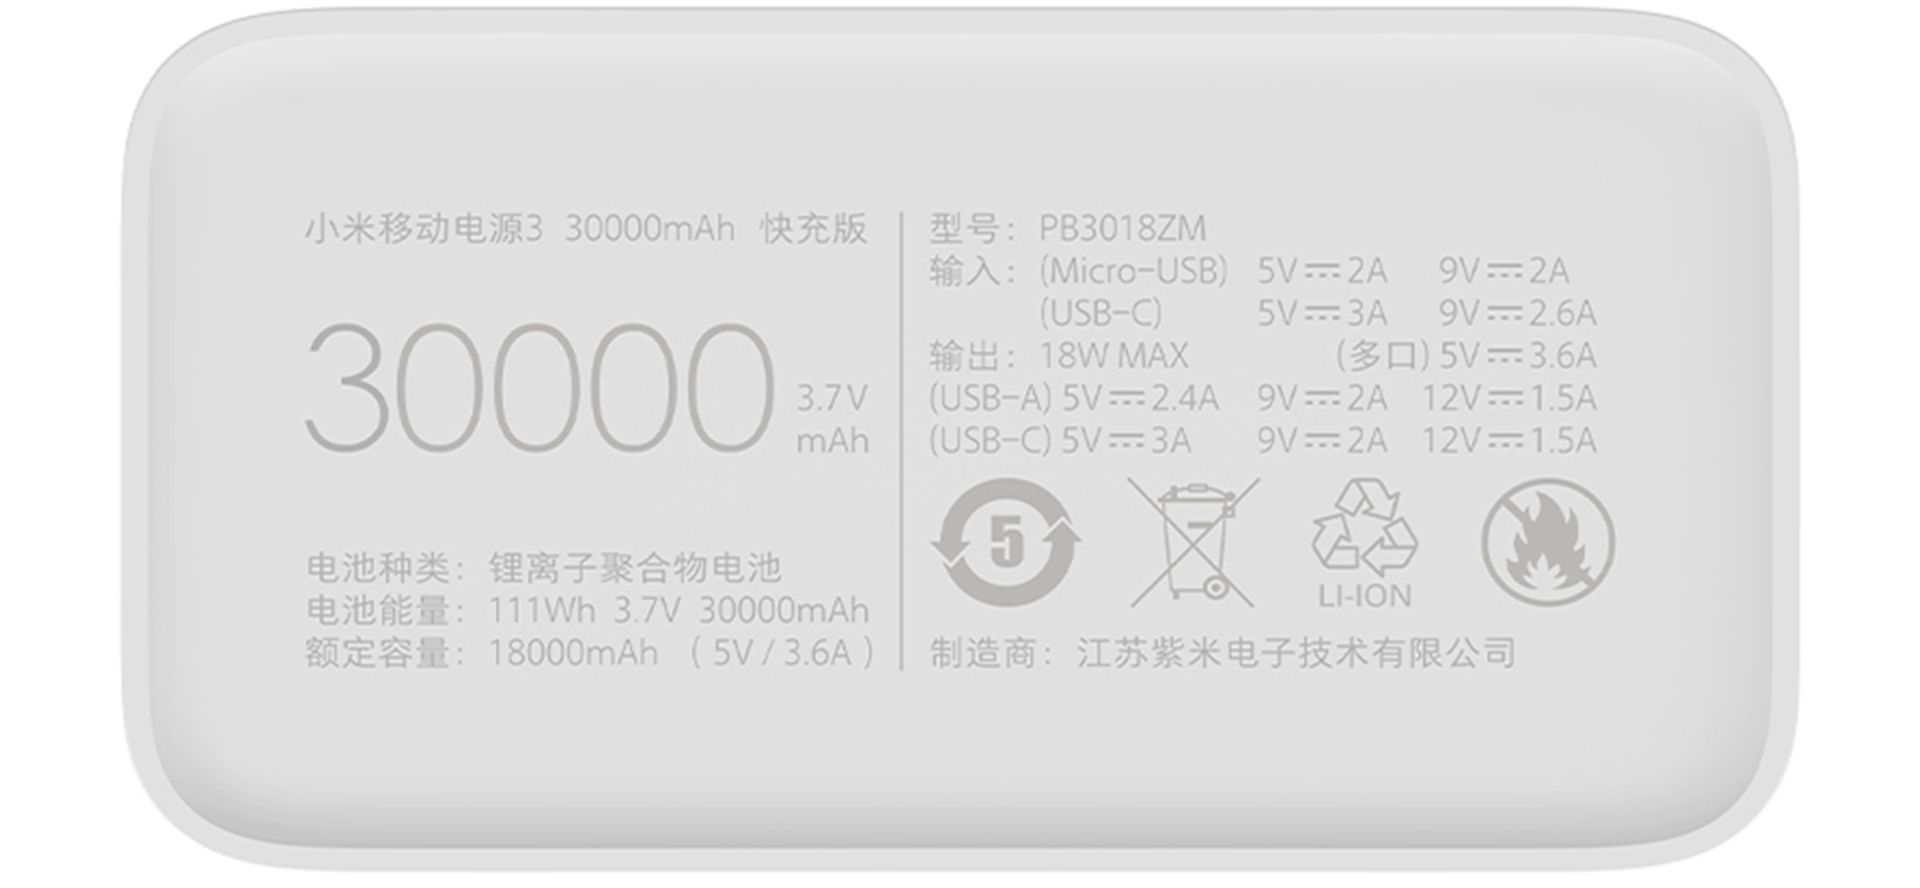 شیائومی می پاور بانک 3 / Xiaomi Mi Power Bank 3